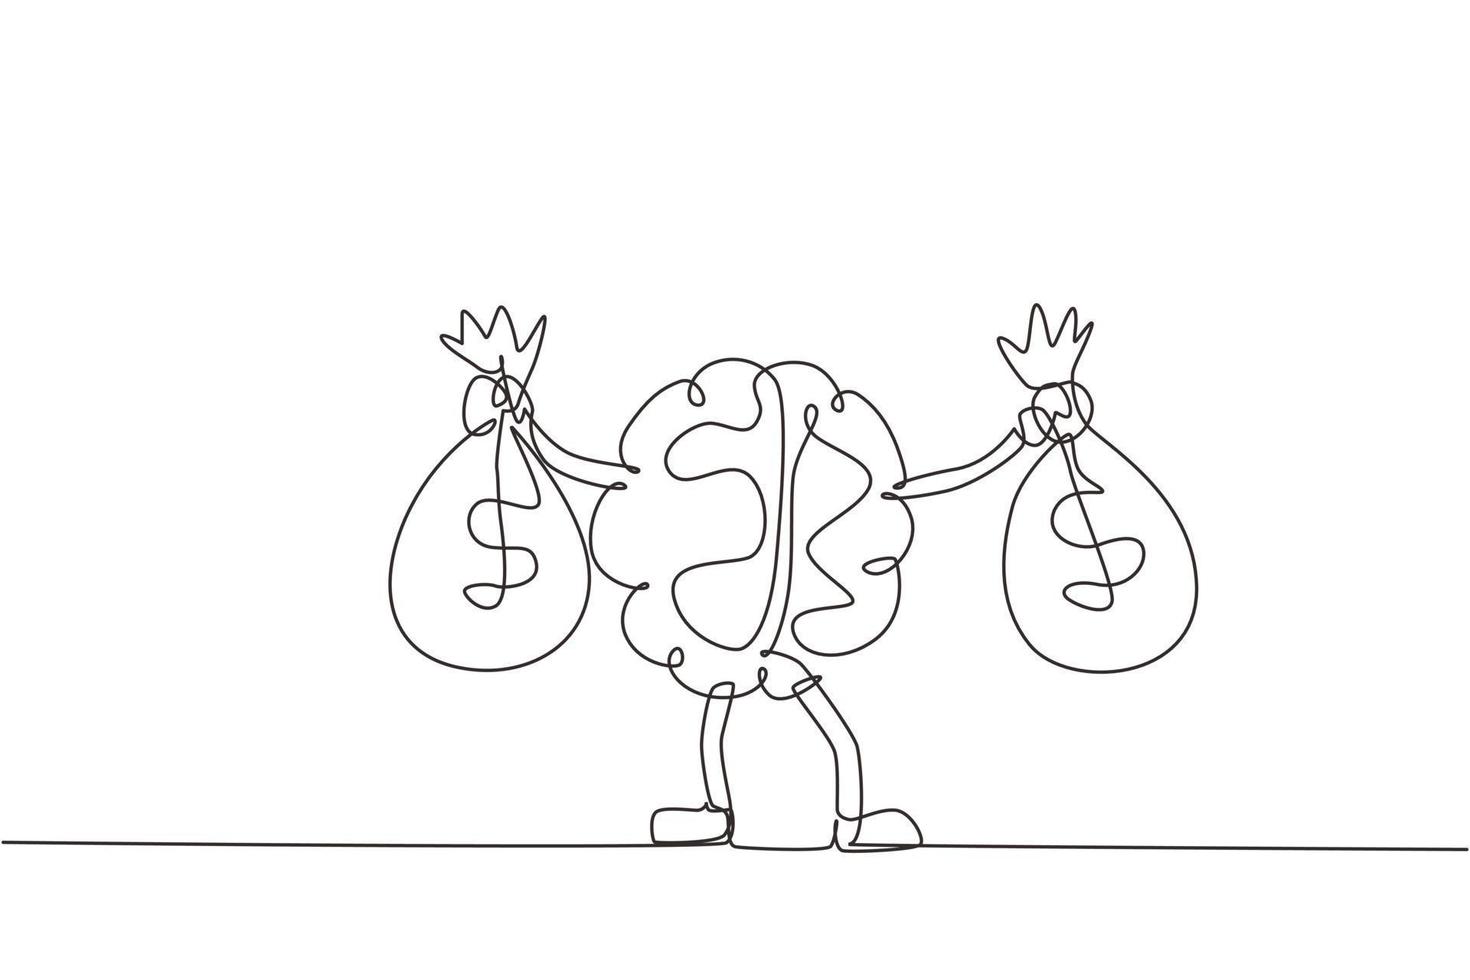 cerveau de dessin en ligne continue unique tenant un sac d'argent à deux mains. illustration de personnage de mascotte de cerveau mignon tenant un sac plein d'argent. dynamique une ligne dessiner illustration vectorielle de conception graphique vecteur